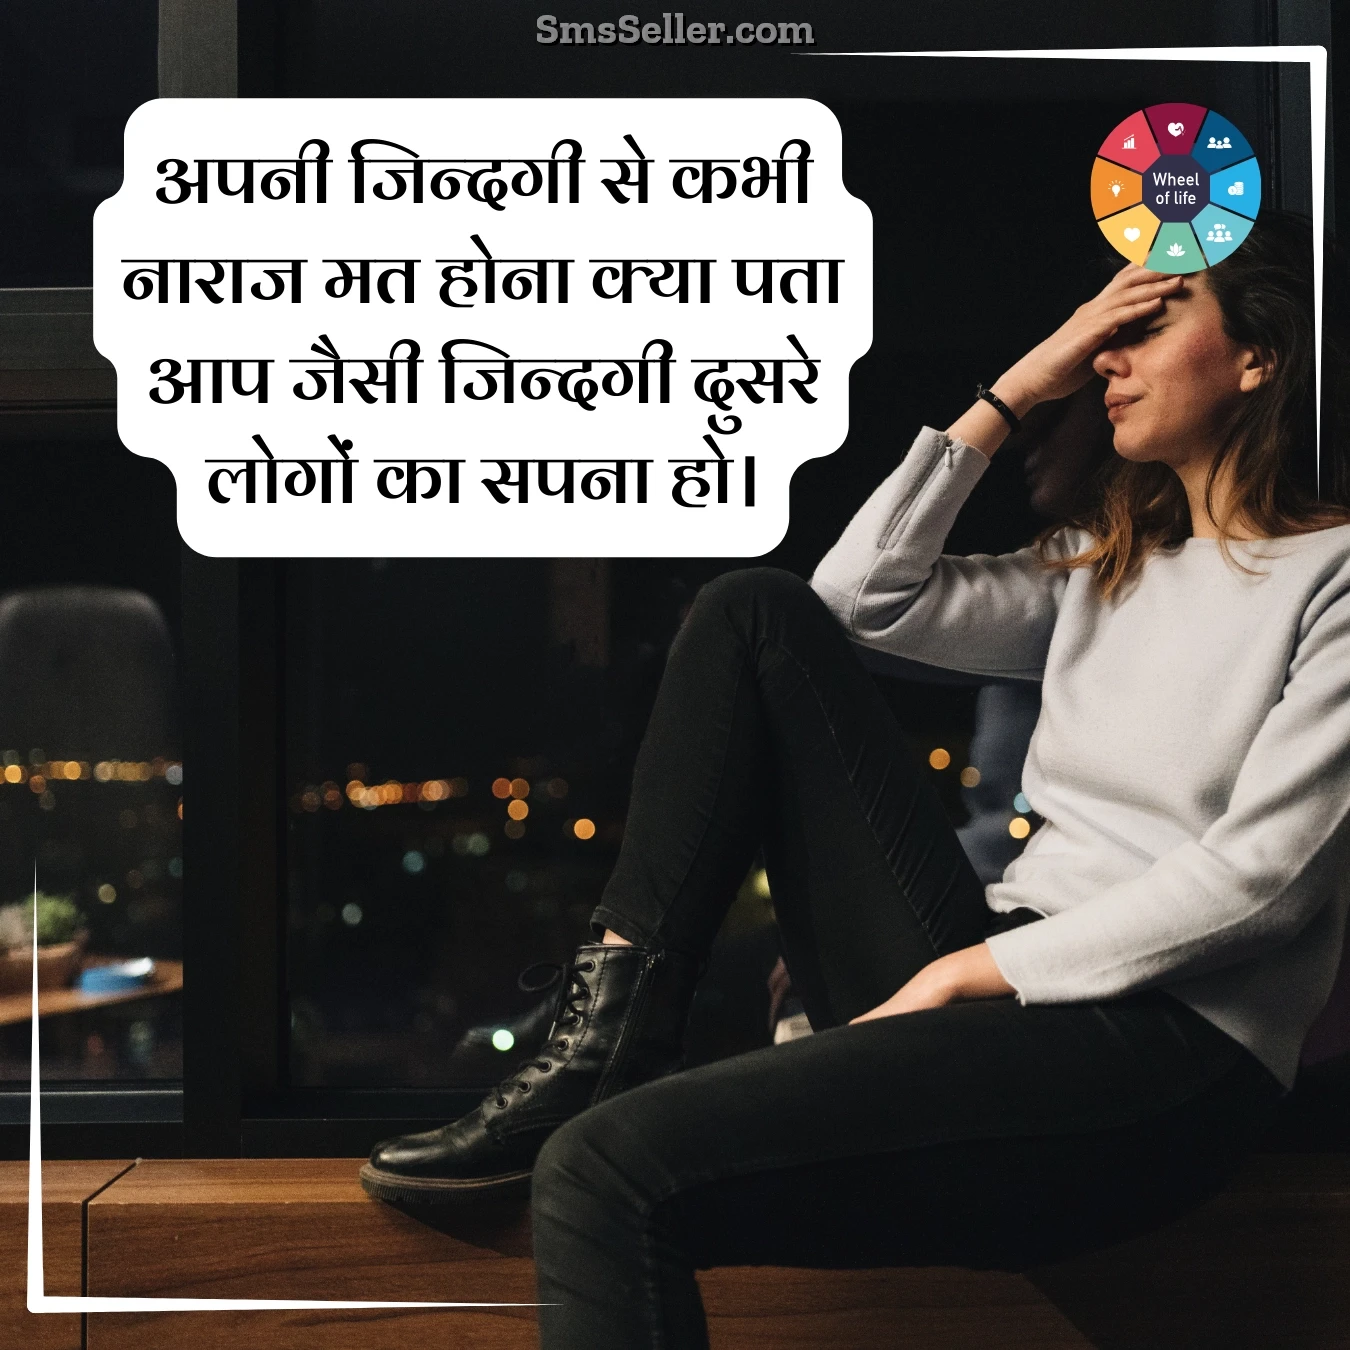 quotes today in hindi apanee jindagee se kabhee naaraaj